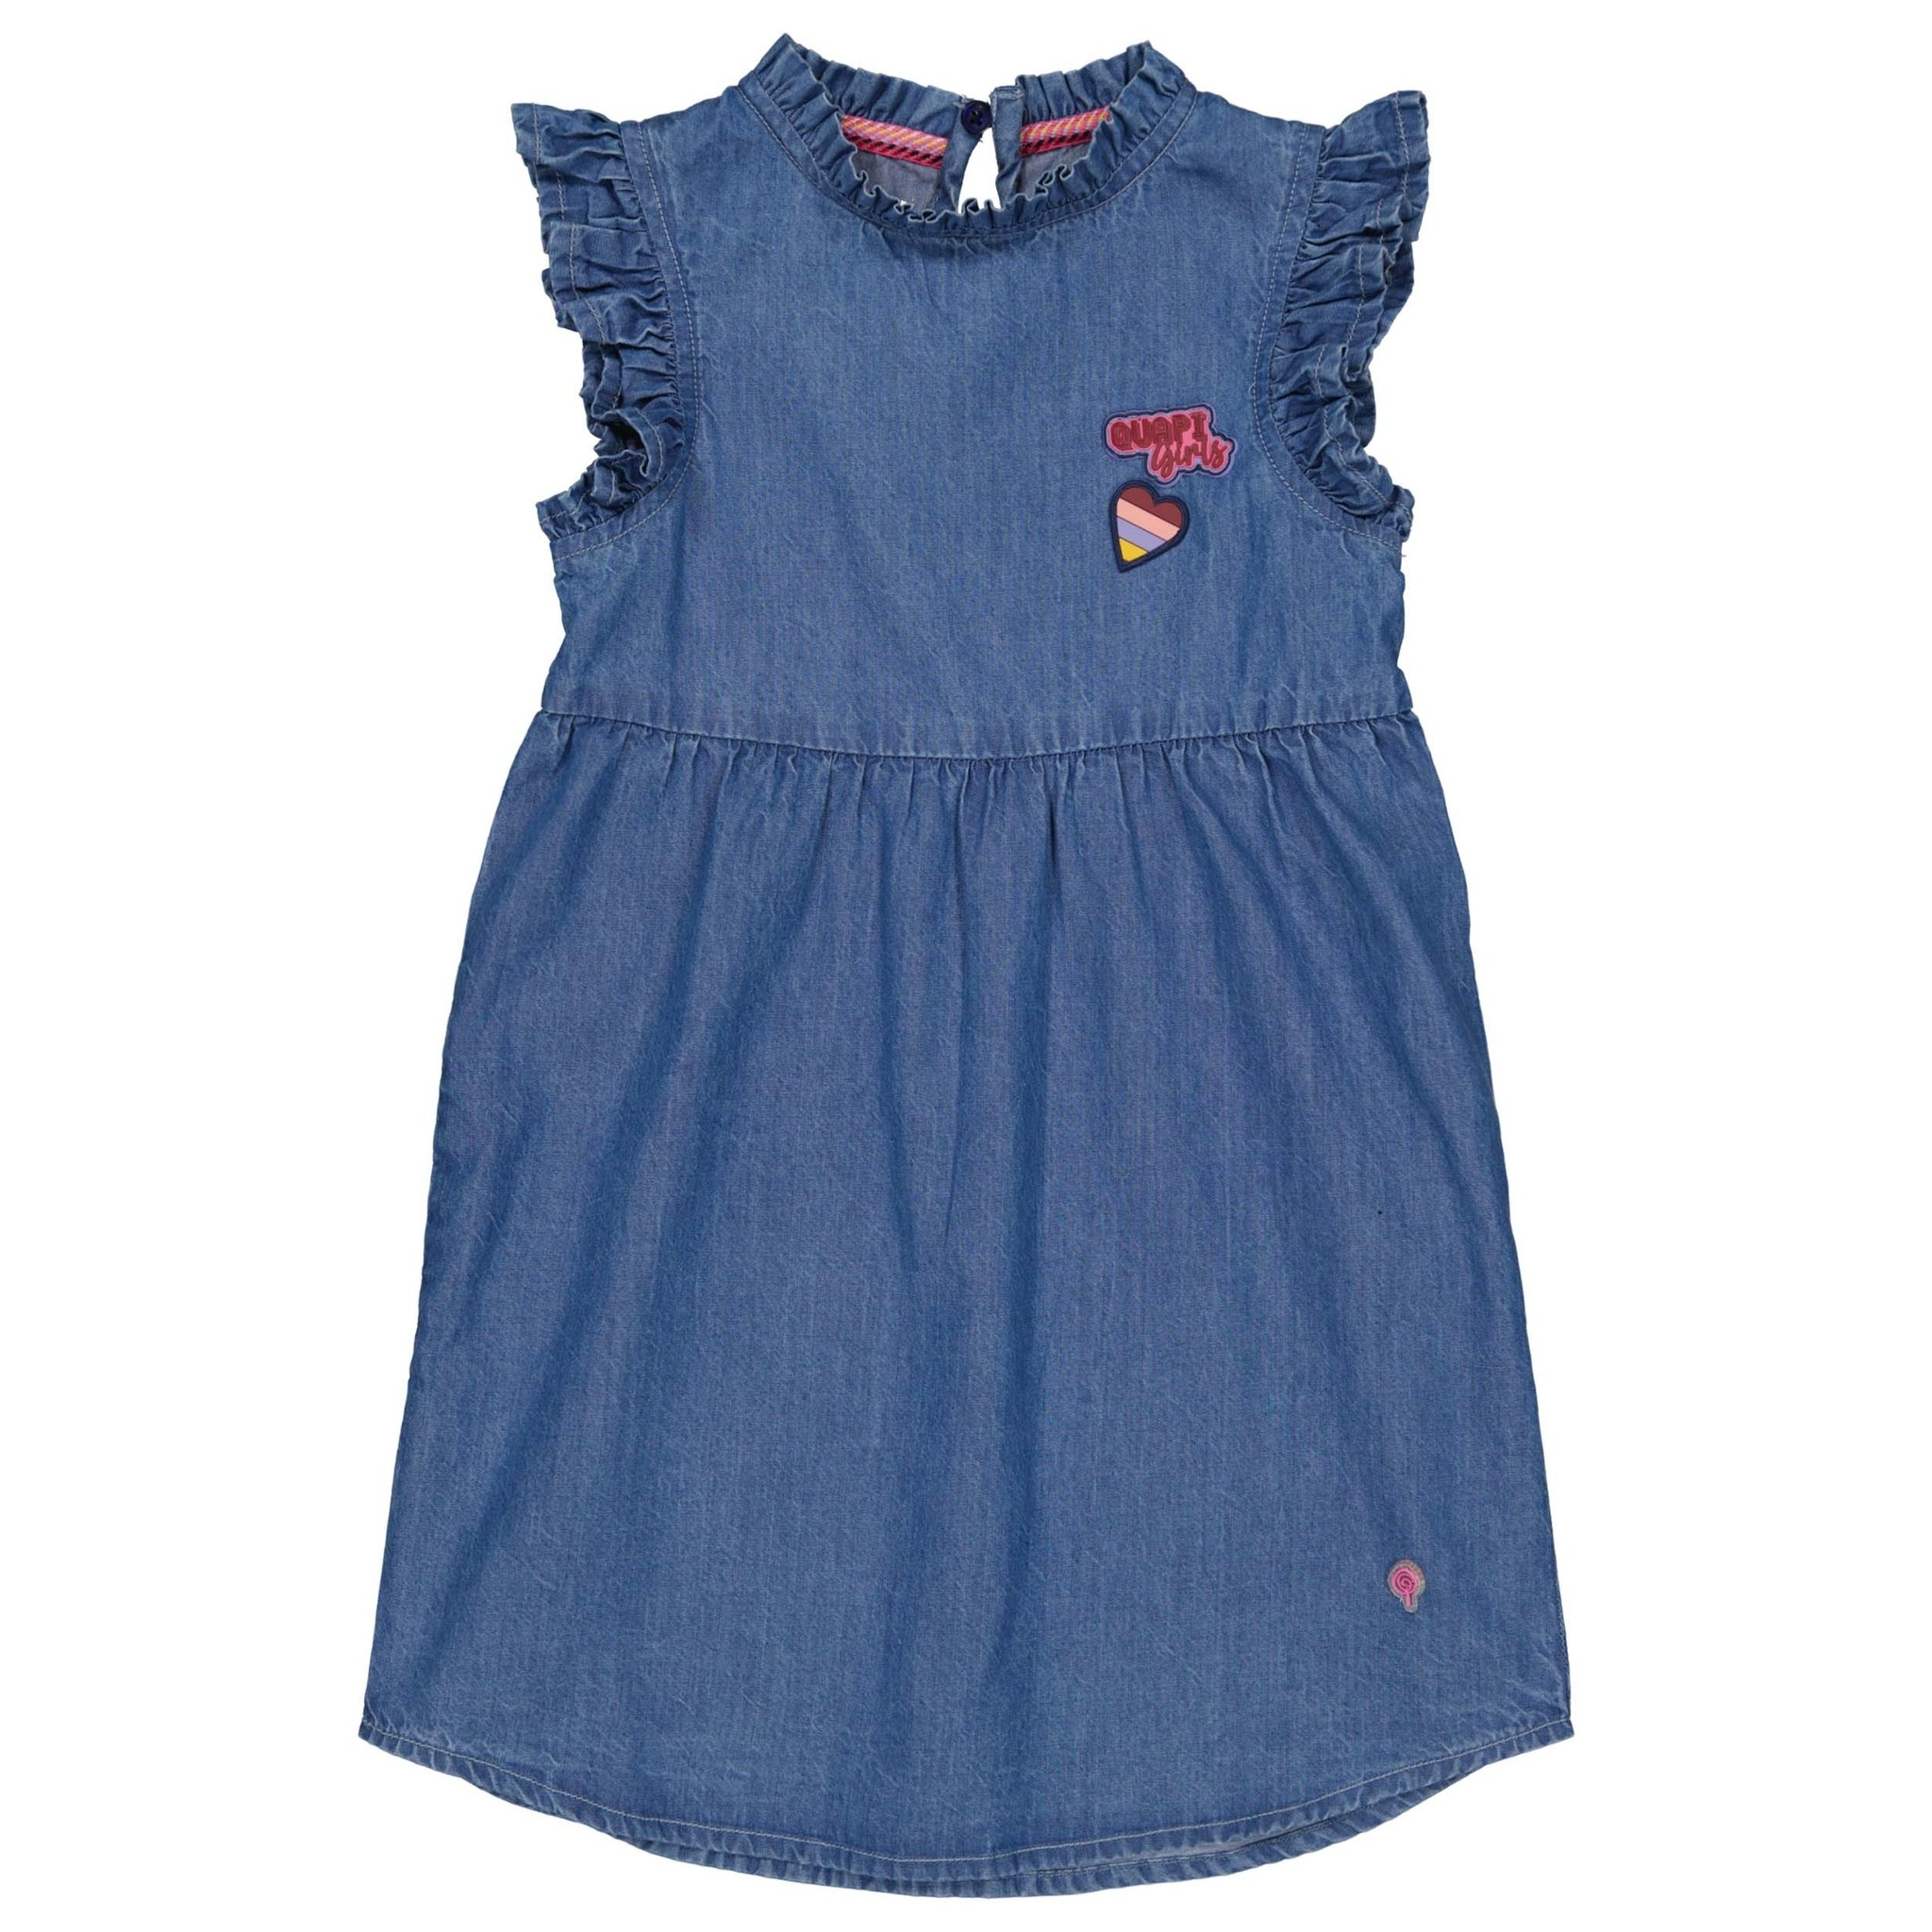 Quapi Meisjes jurk - Mace - Blauw denim